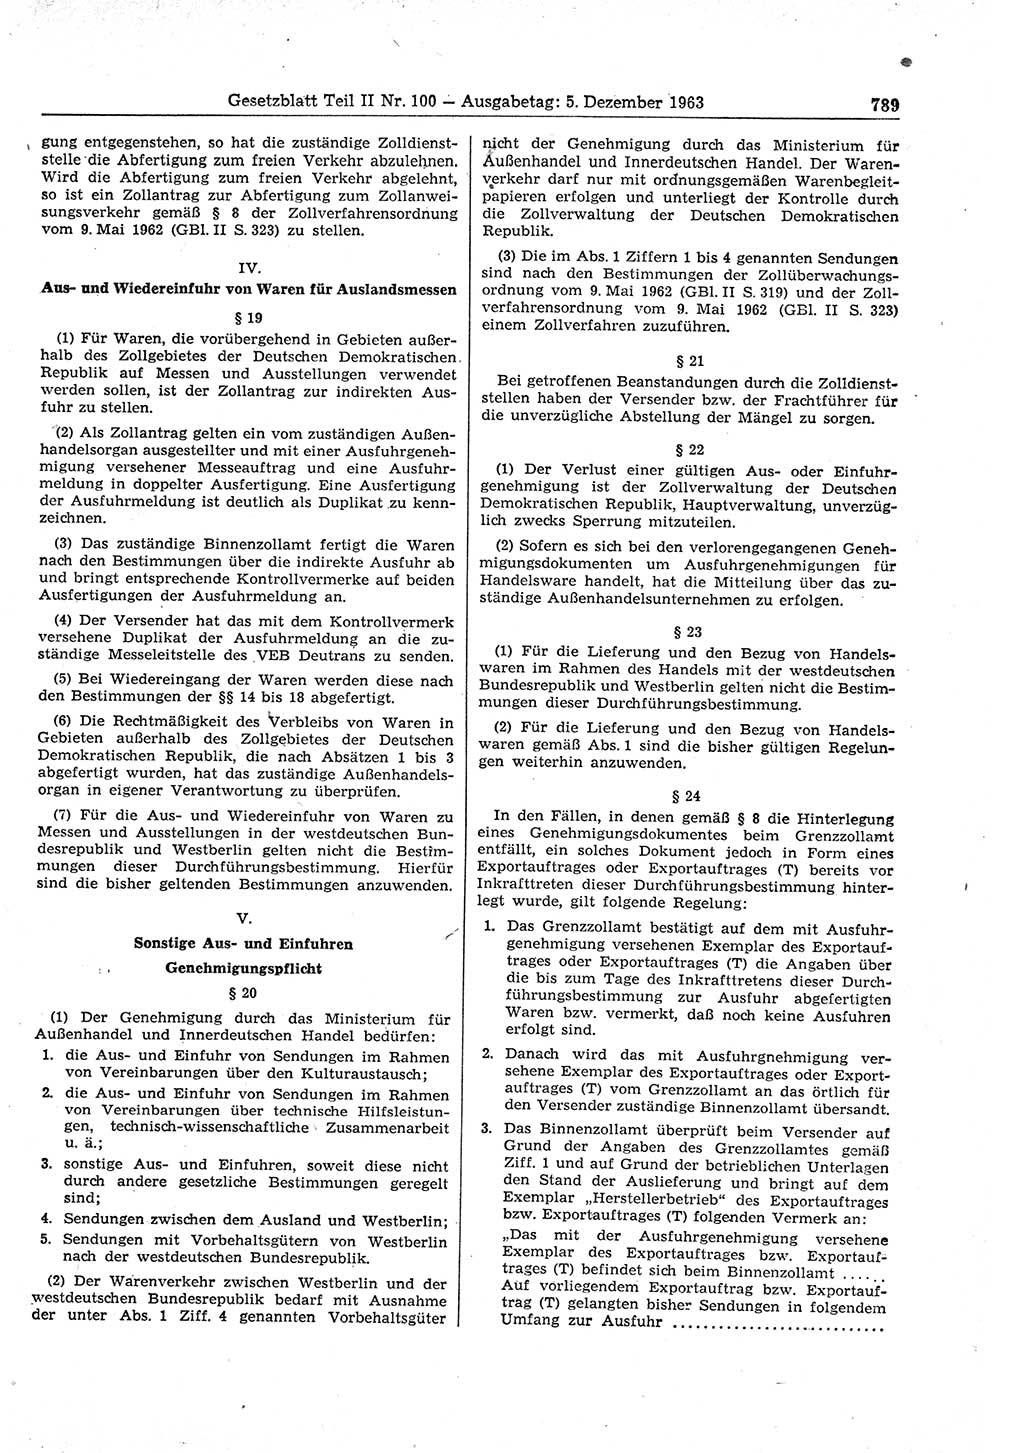 Gesetzblatt (GBl.) der Deutschen Demokratischen Republik (DDR) Teil ⅠⅠ 1963, Seite 789 (GBl. DDR ⅠⅠ 1963, S. 789)